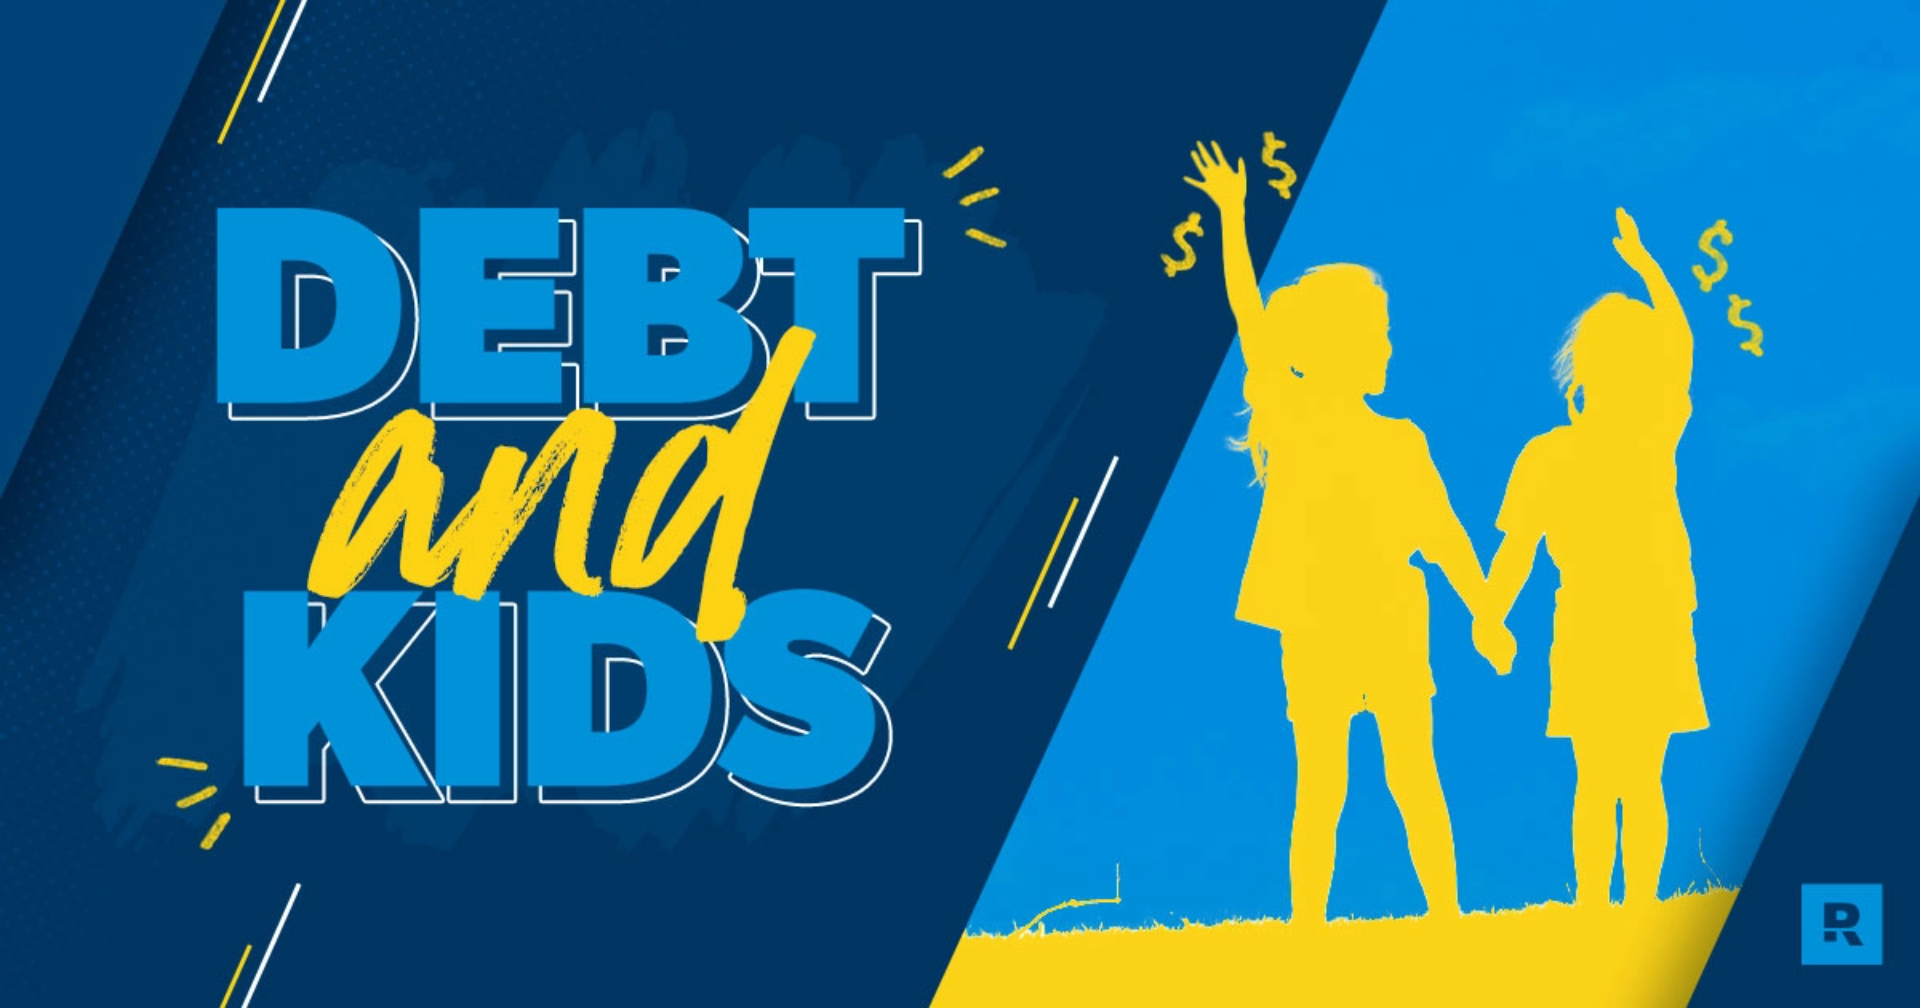 Debt and Kids blog header